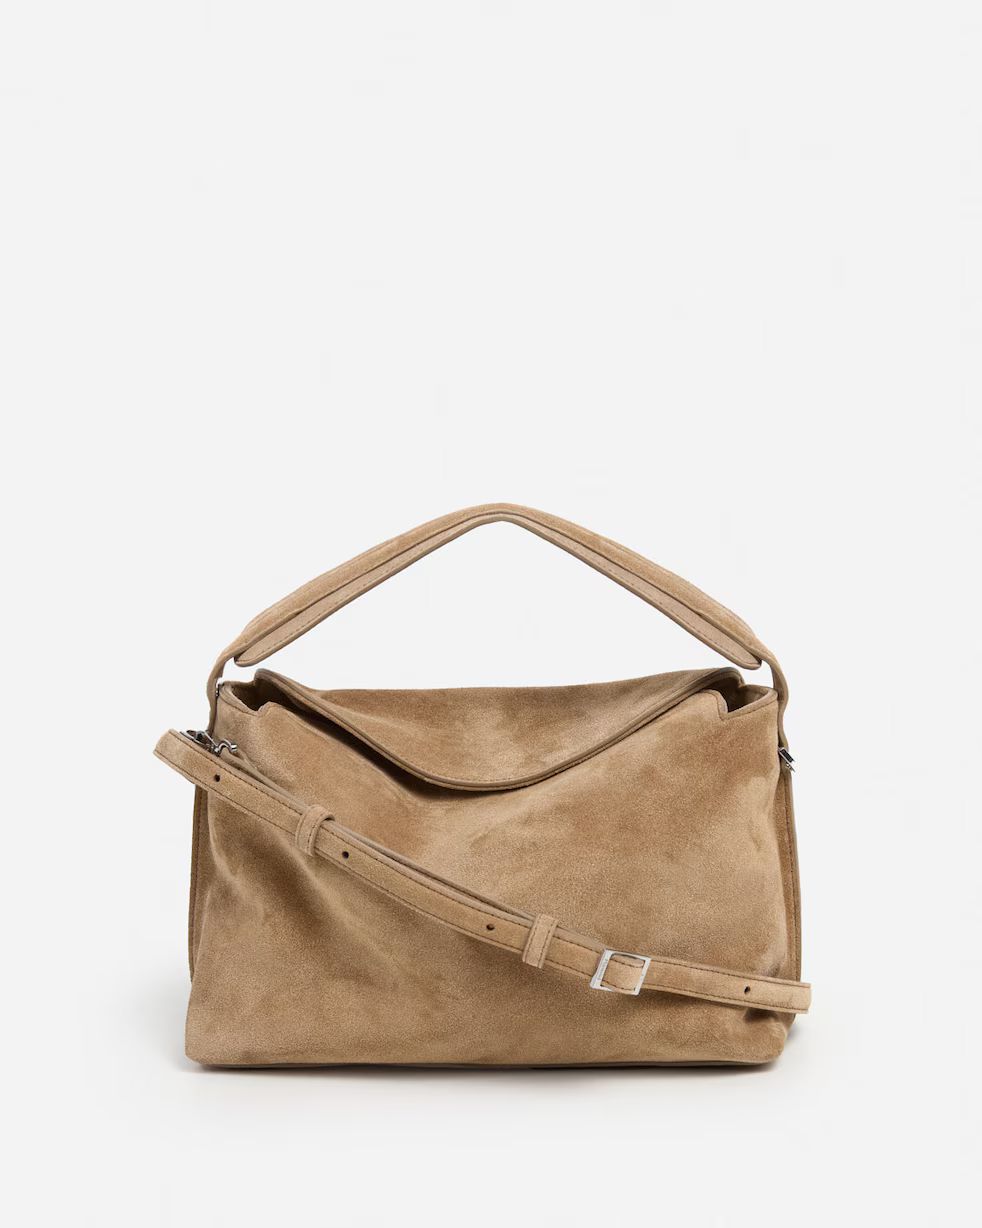 Hera Handbag Suede | Flattered